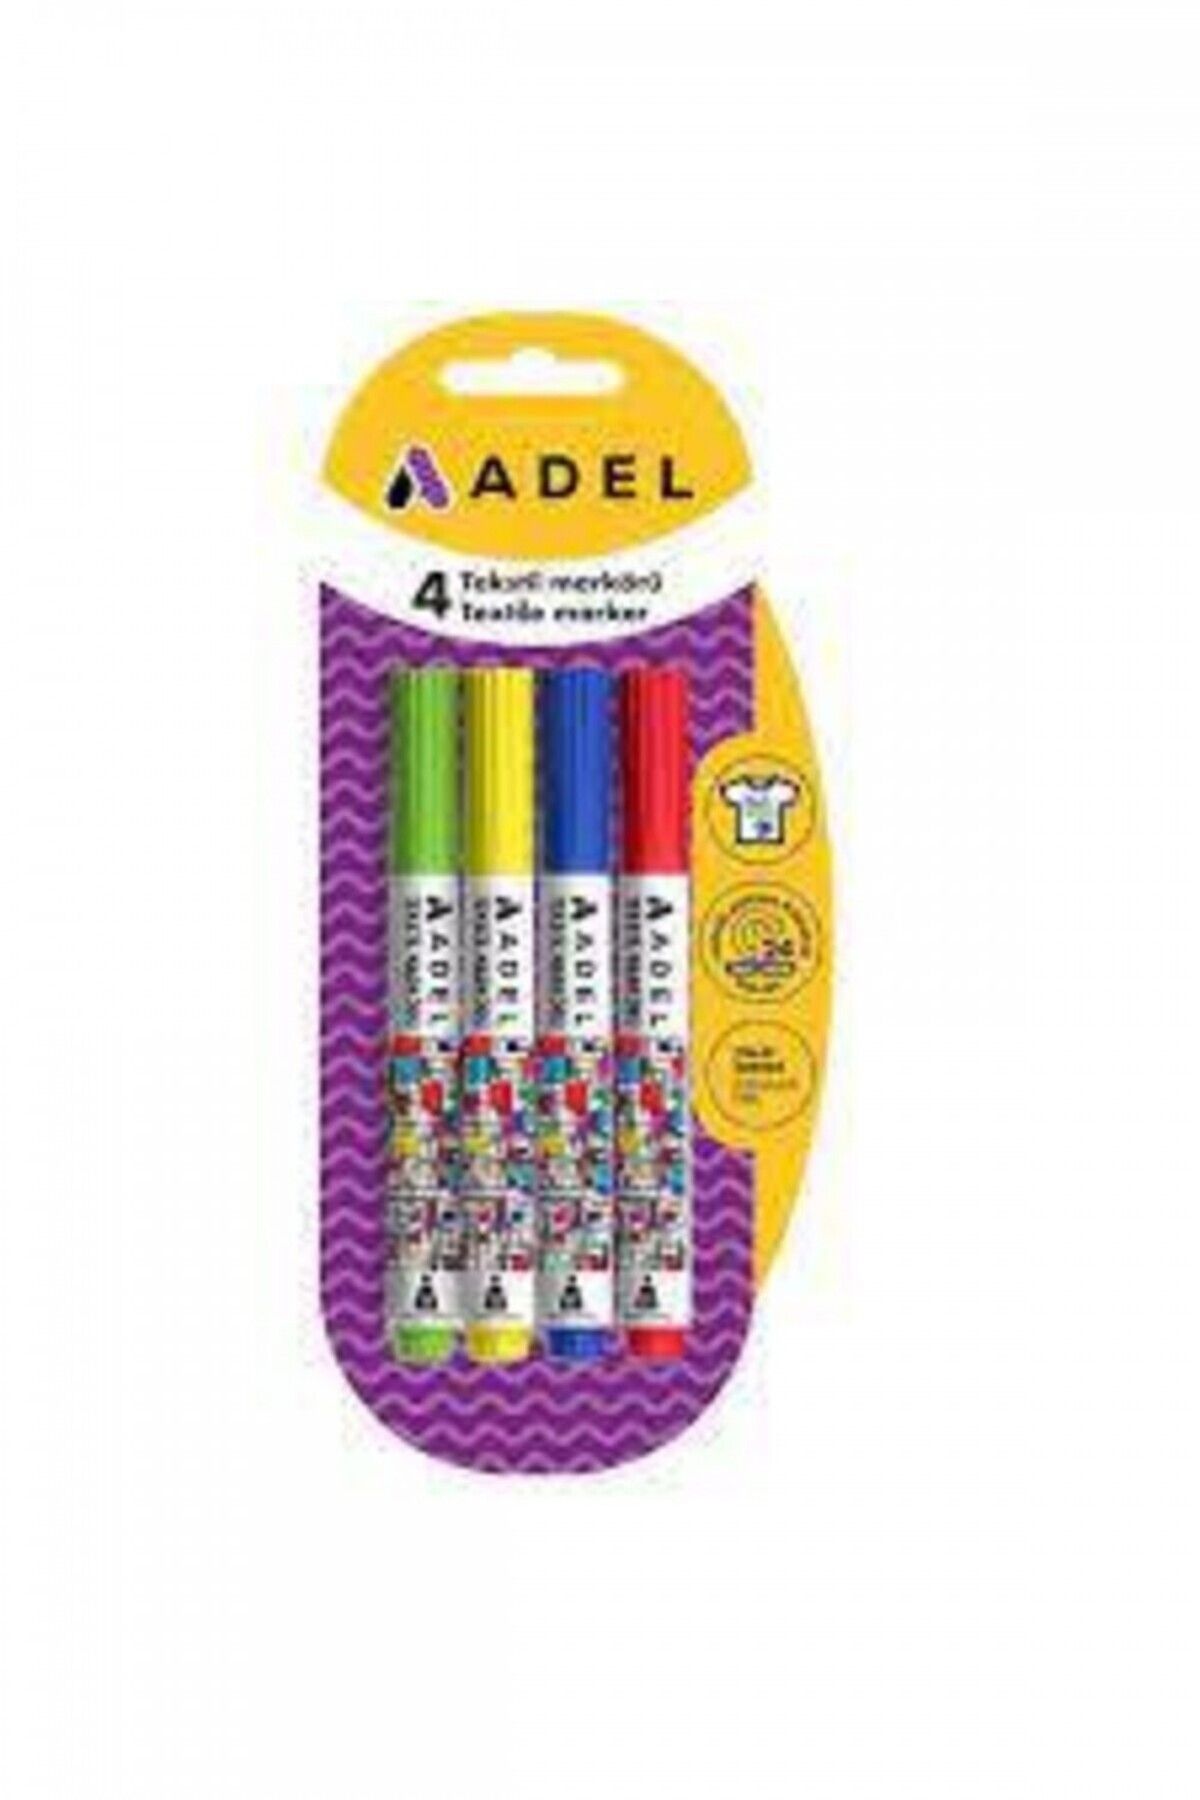 Adel Tekstil Markörü 4'lü Çeşit-1 2201000032